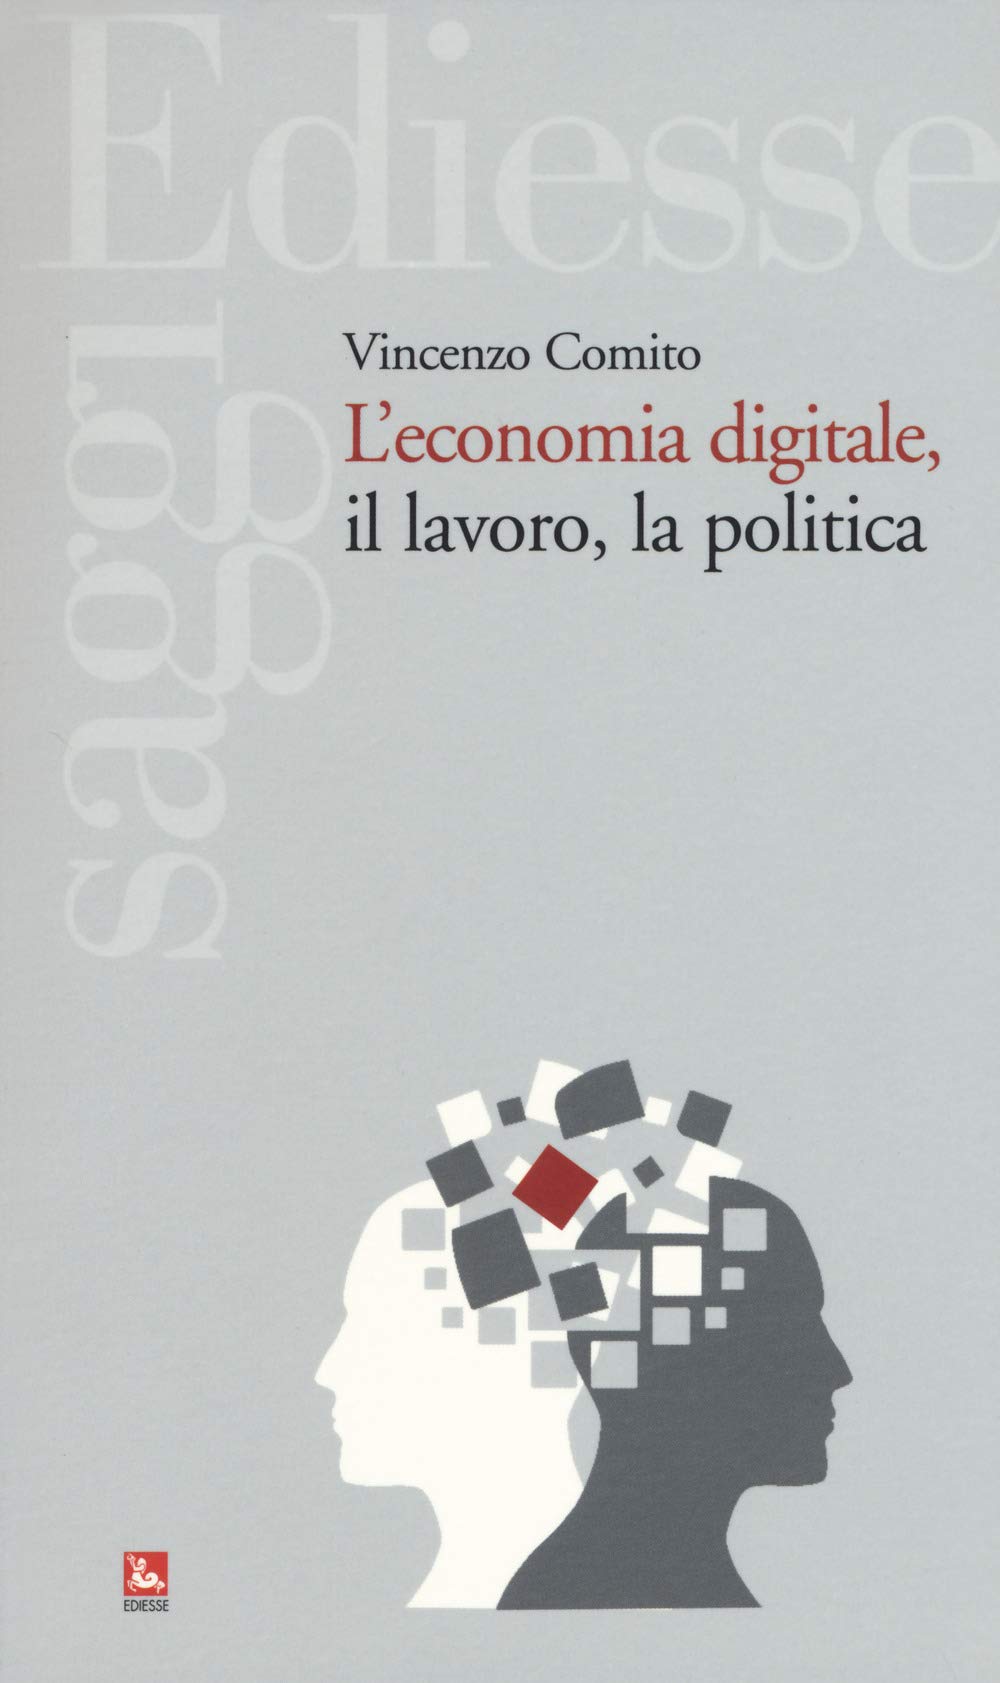 Vincenzo Comito: L'economia digitale, il lavoro, la politica